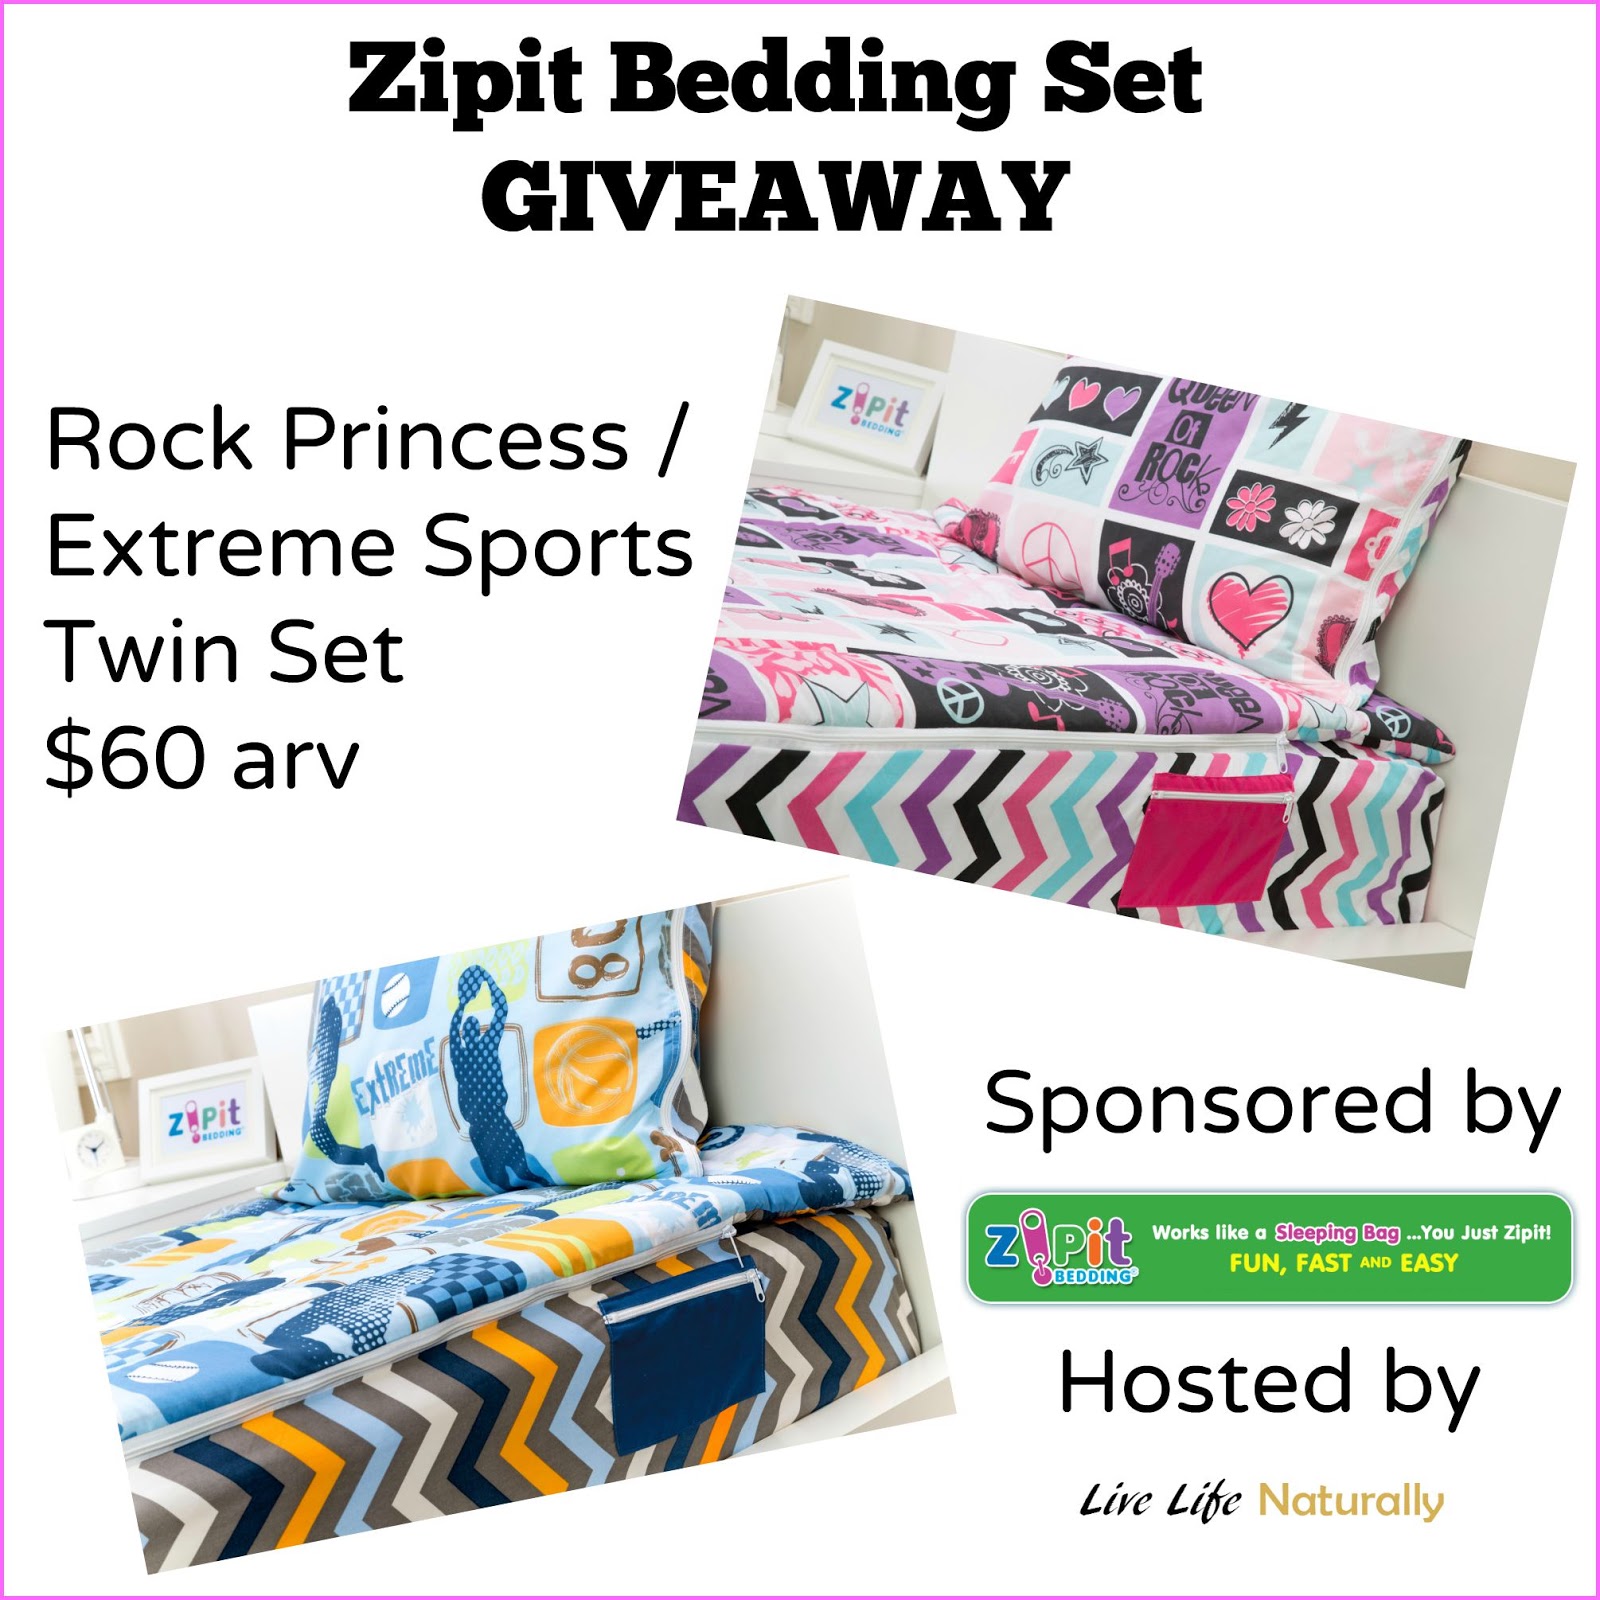 Zipit Bedding Set Giveaway Ends 10/13